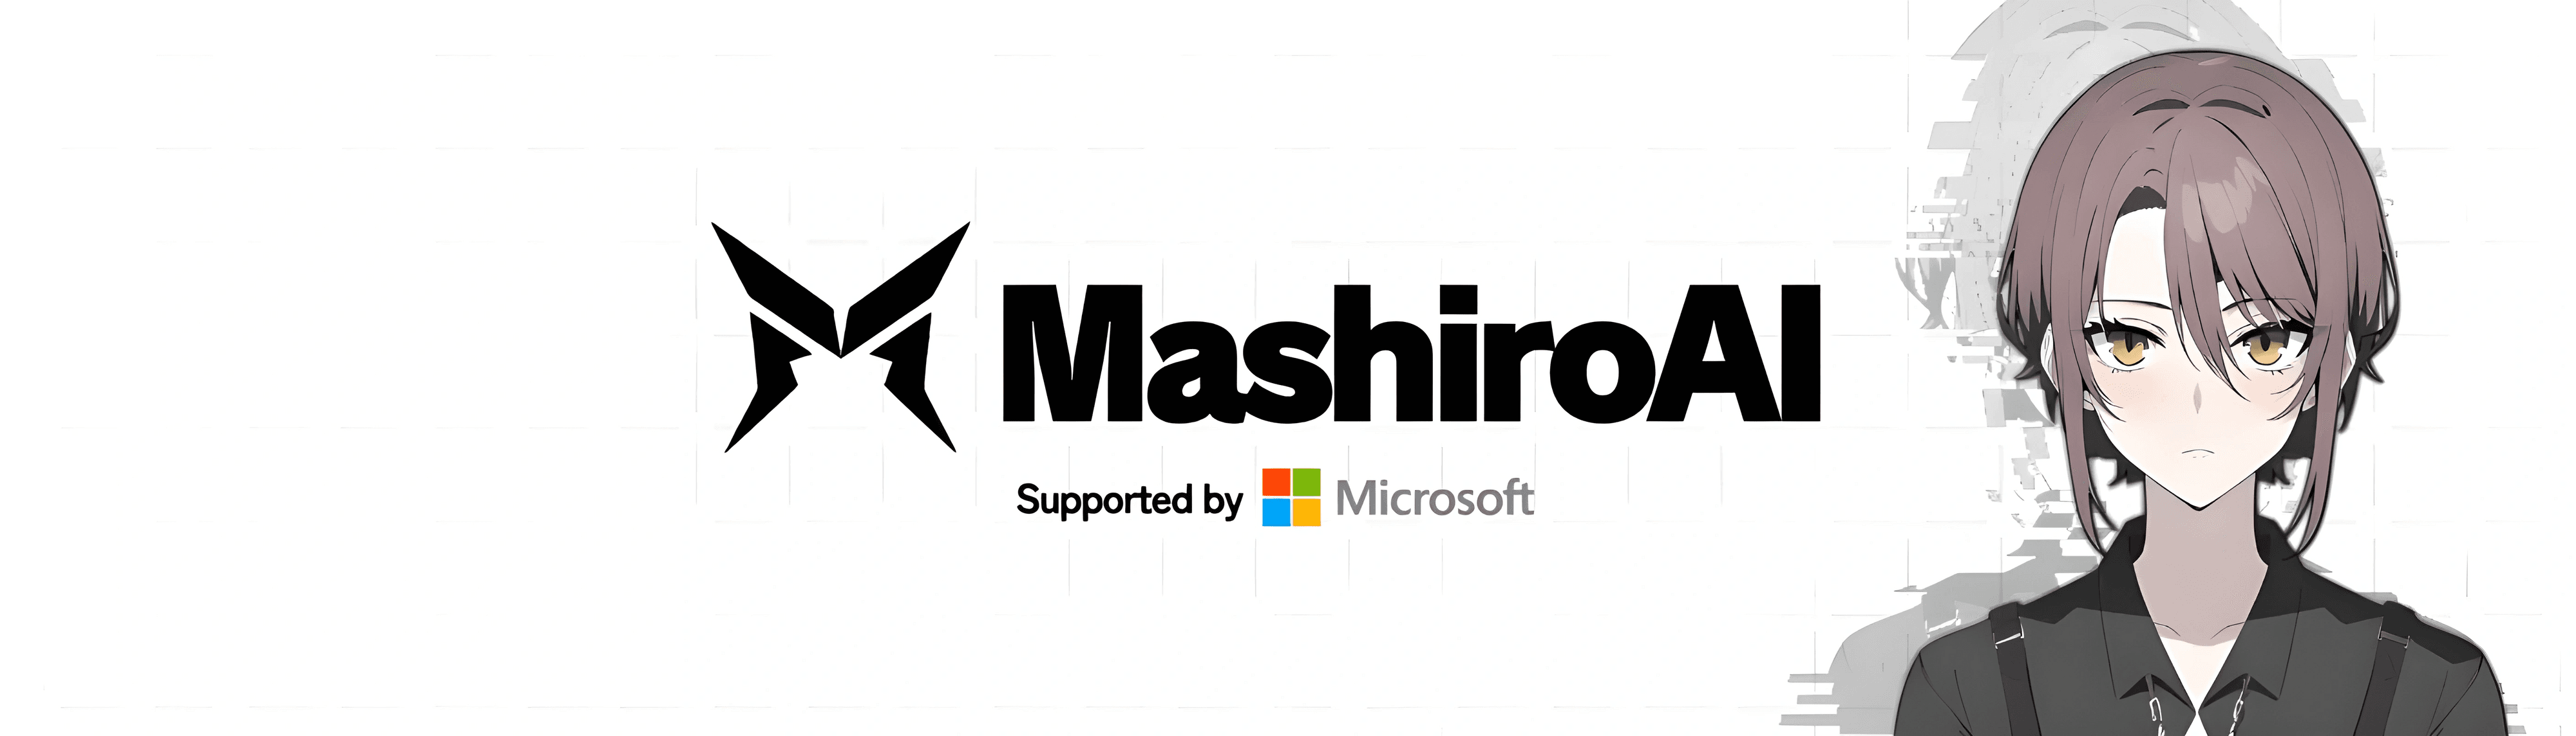 MashiroAI banner